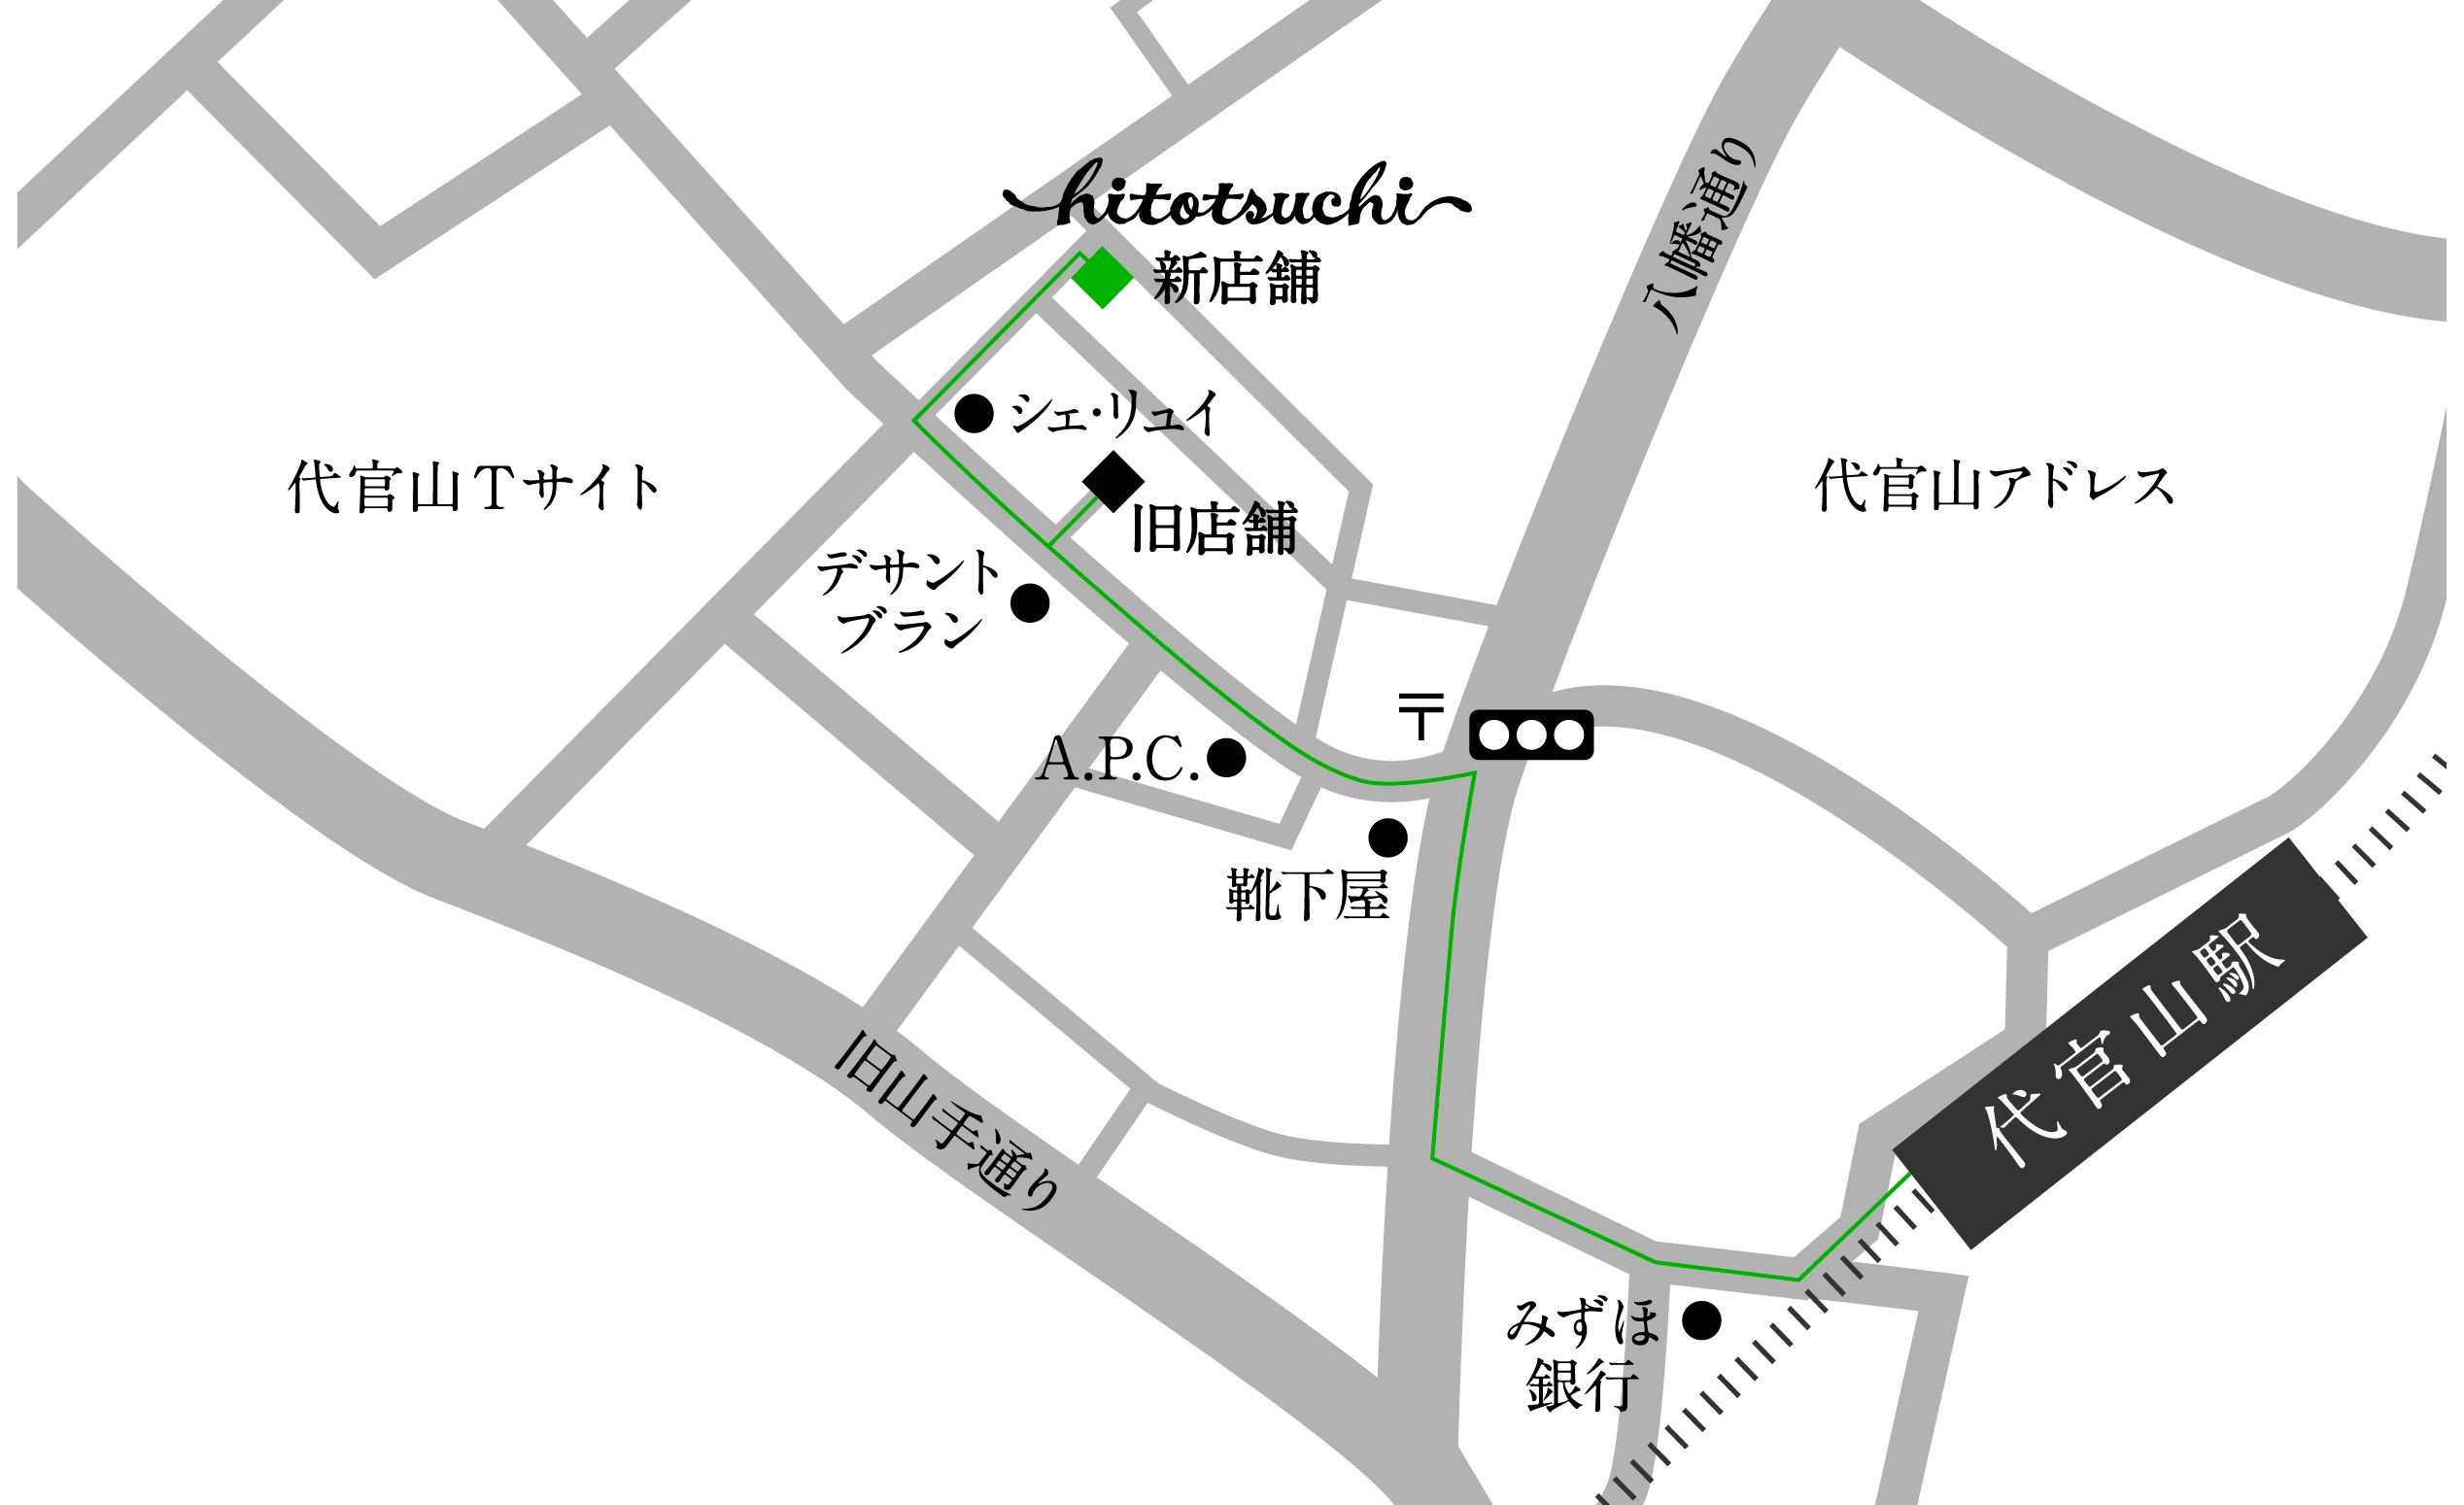 hitotsuchi 地図 map